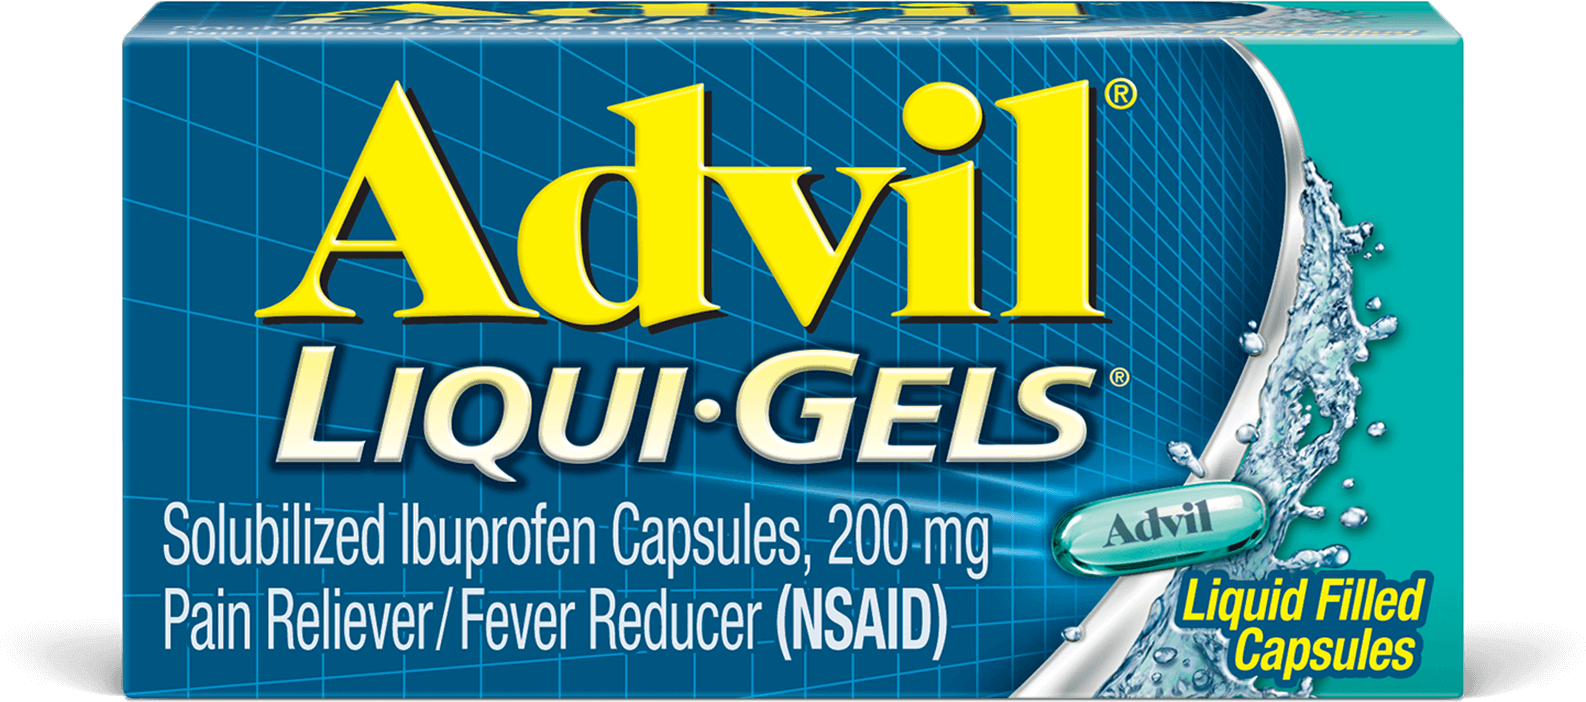 Advil liqui gels